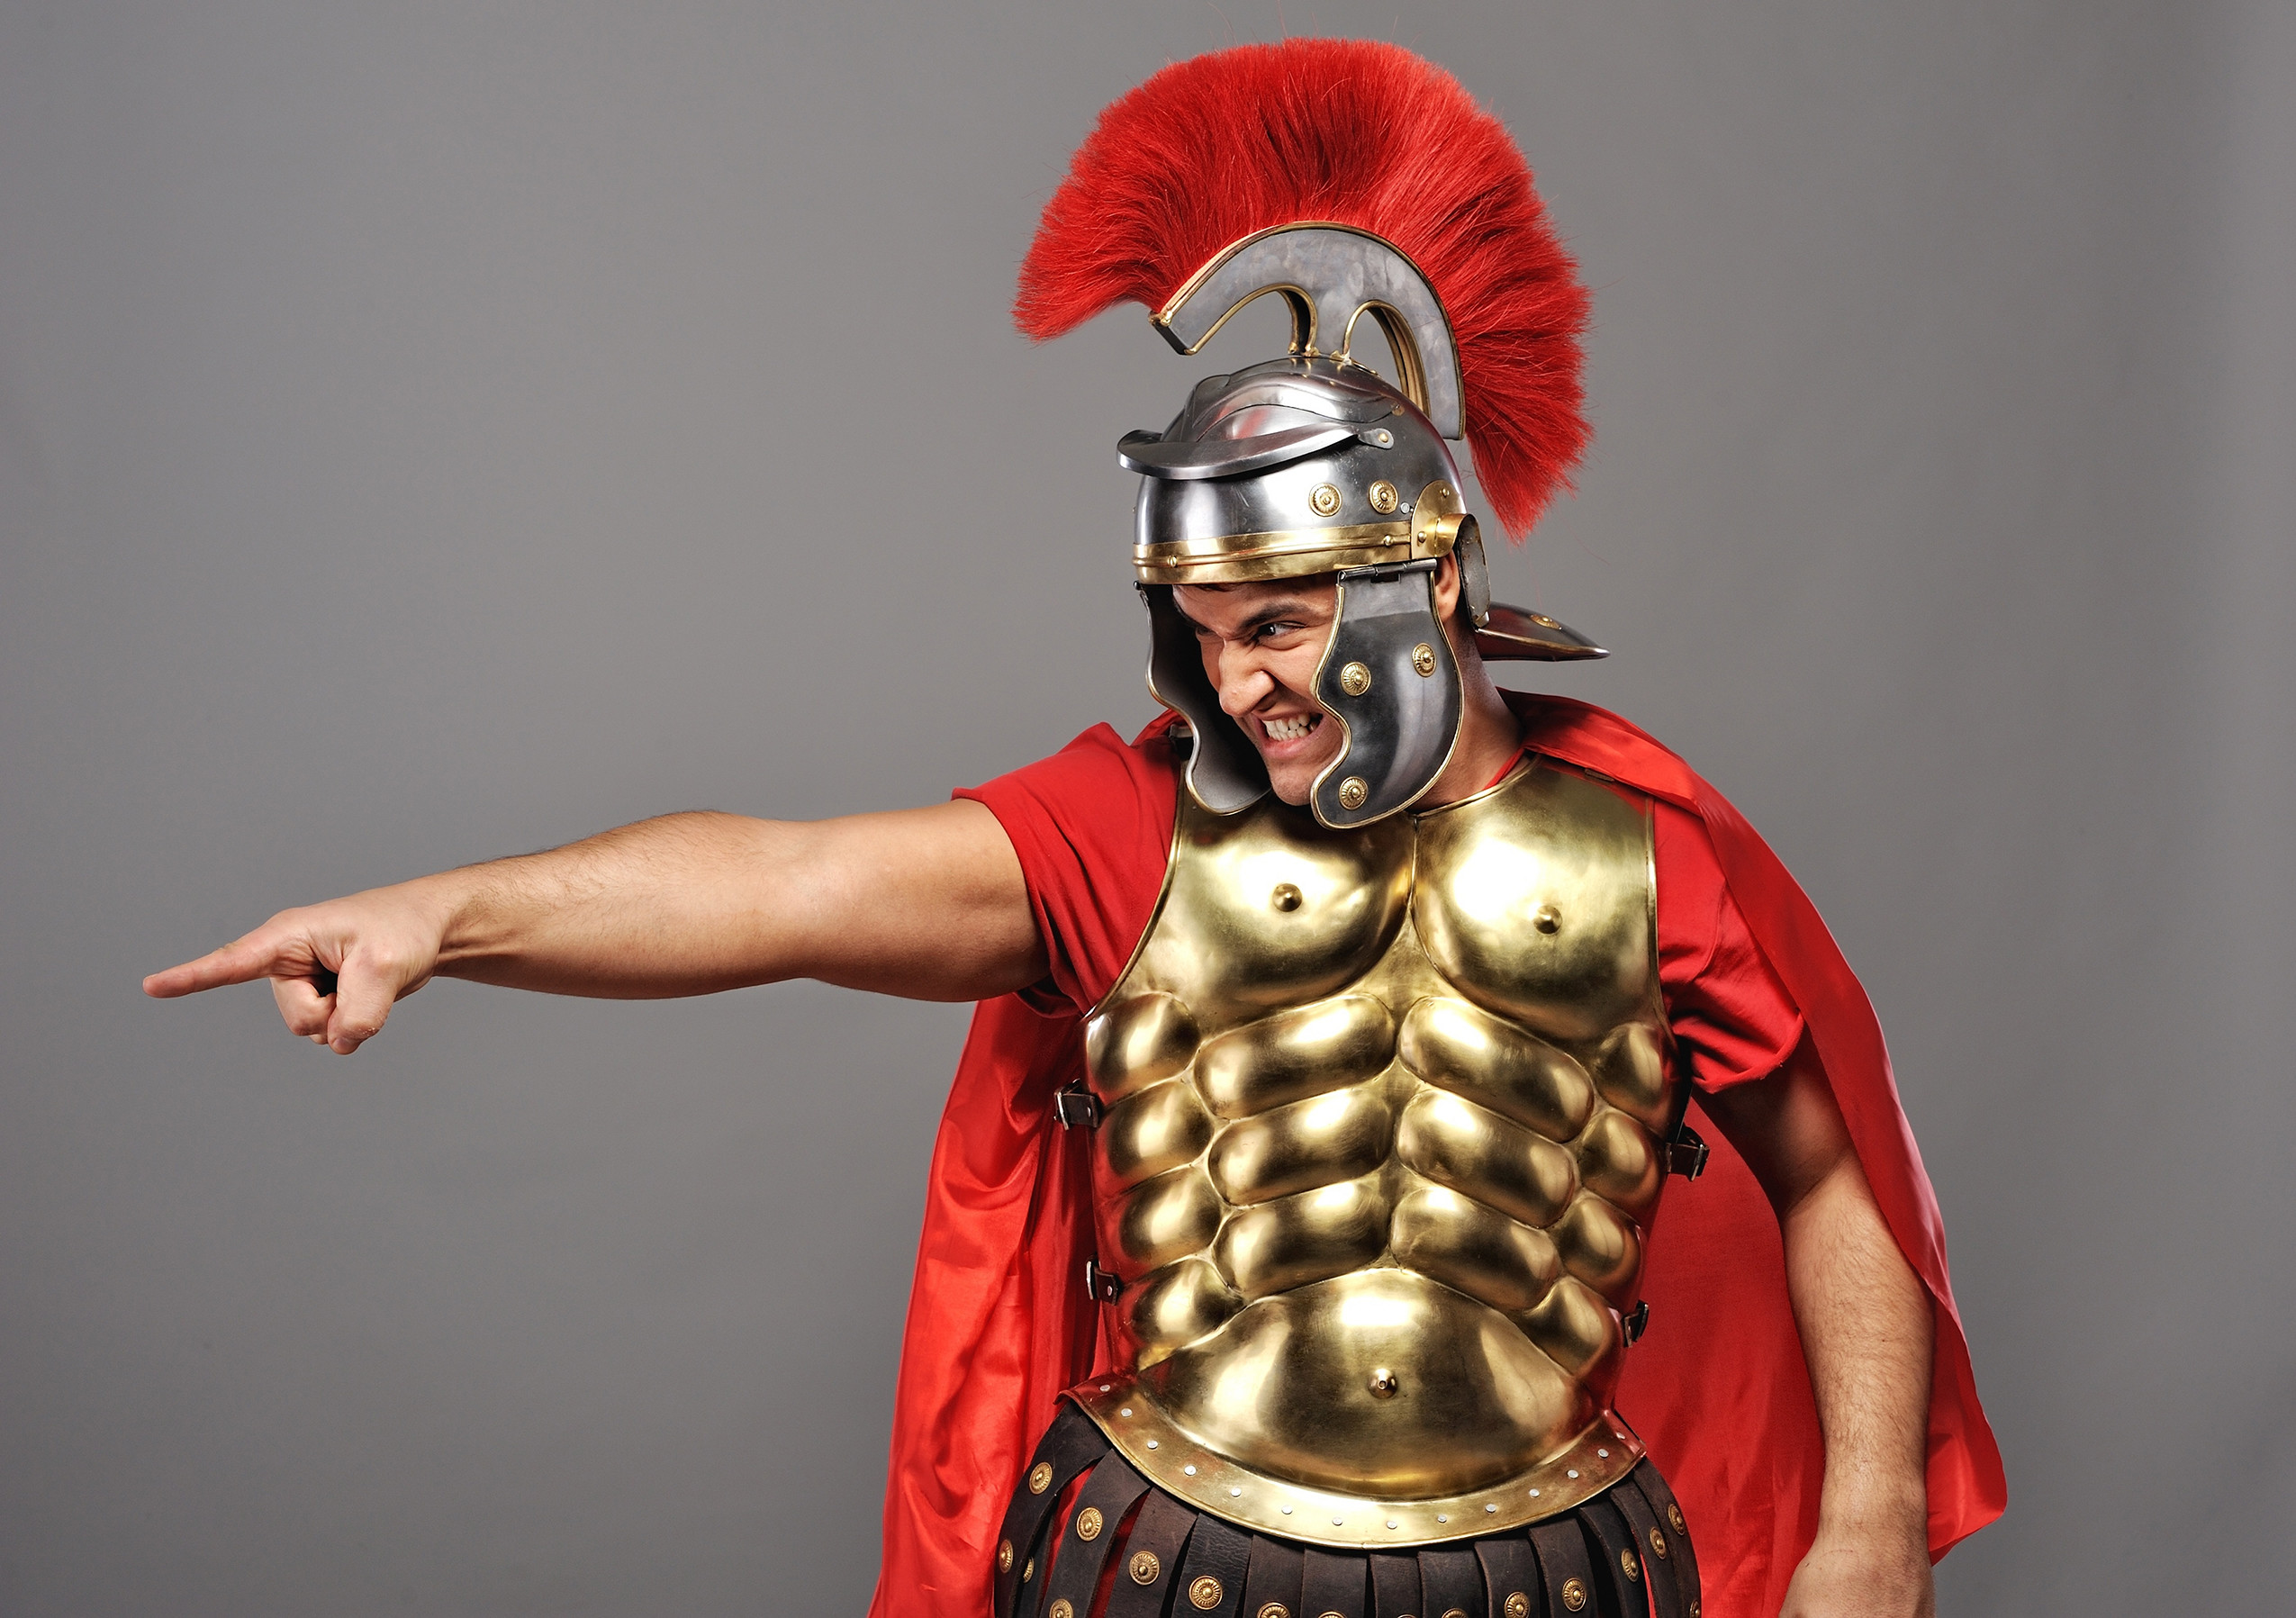 römischer soldat tapete,kürass,rüstung,brustplatte,ritter,metall